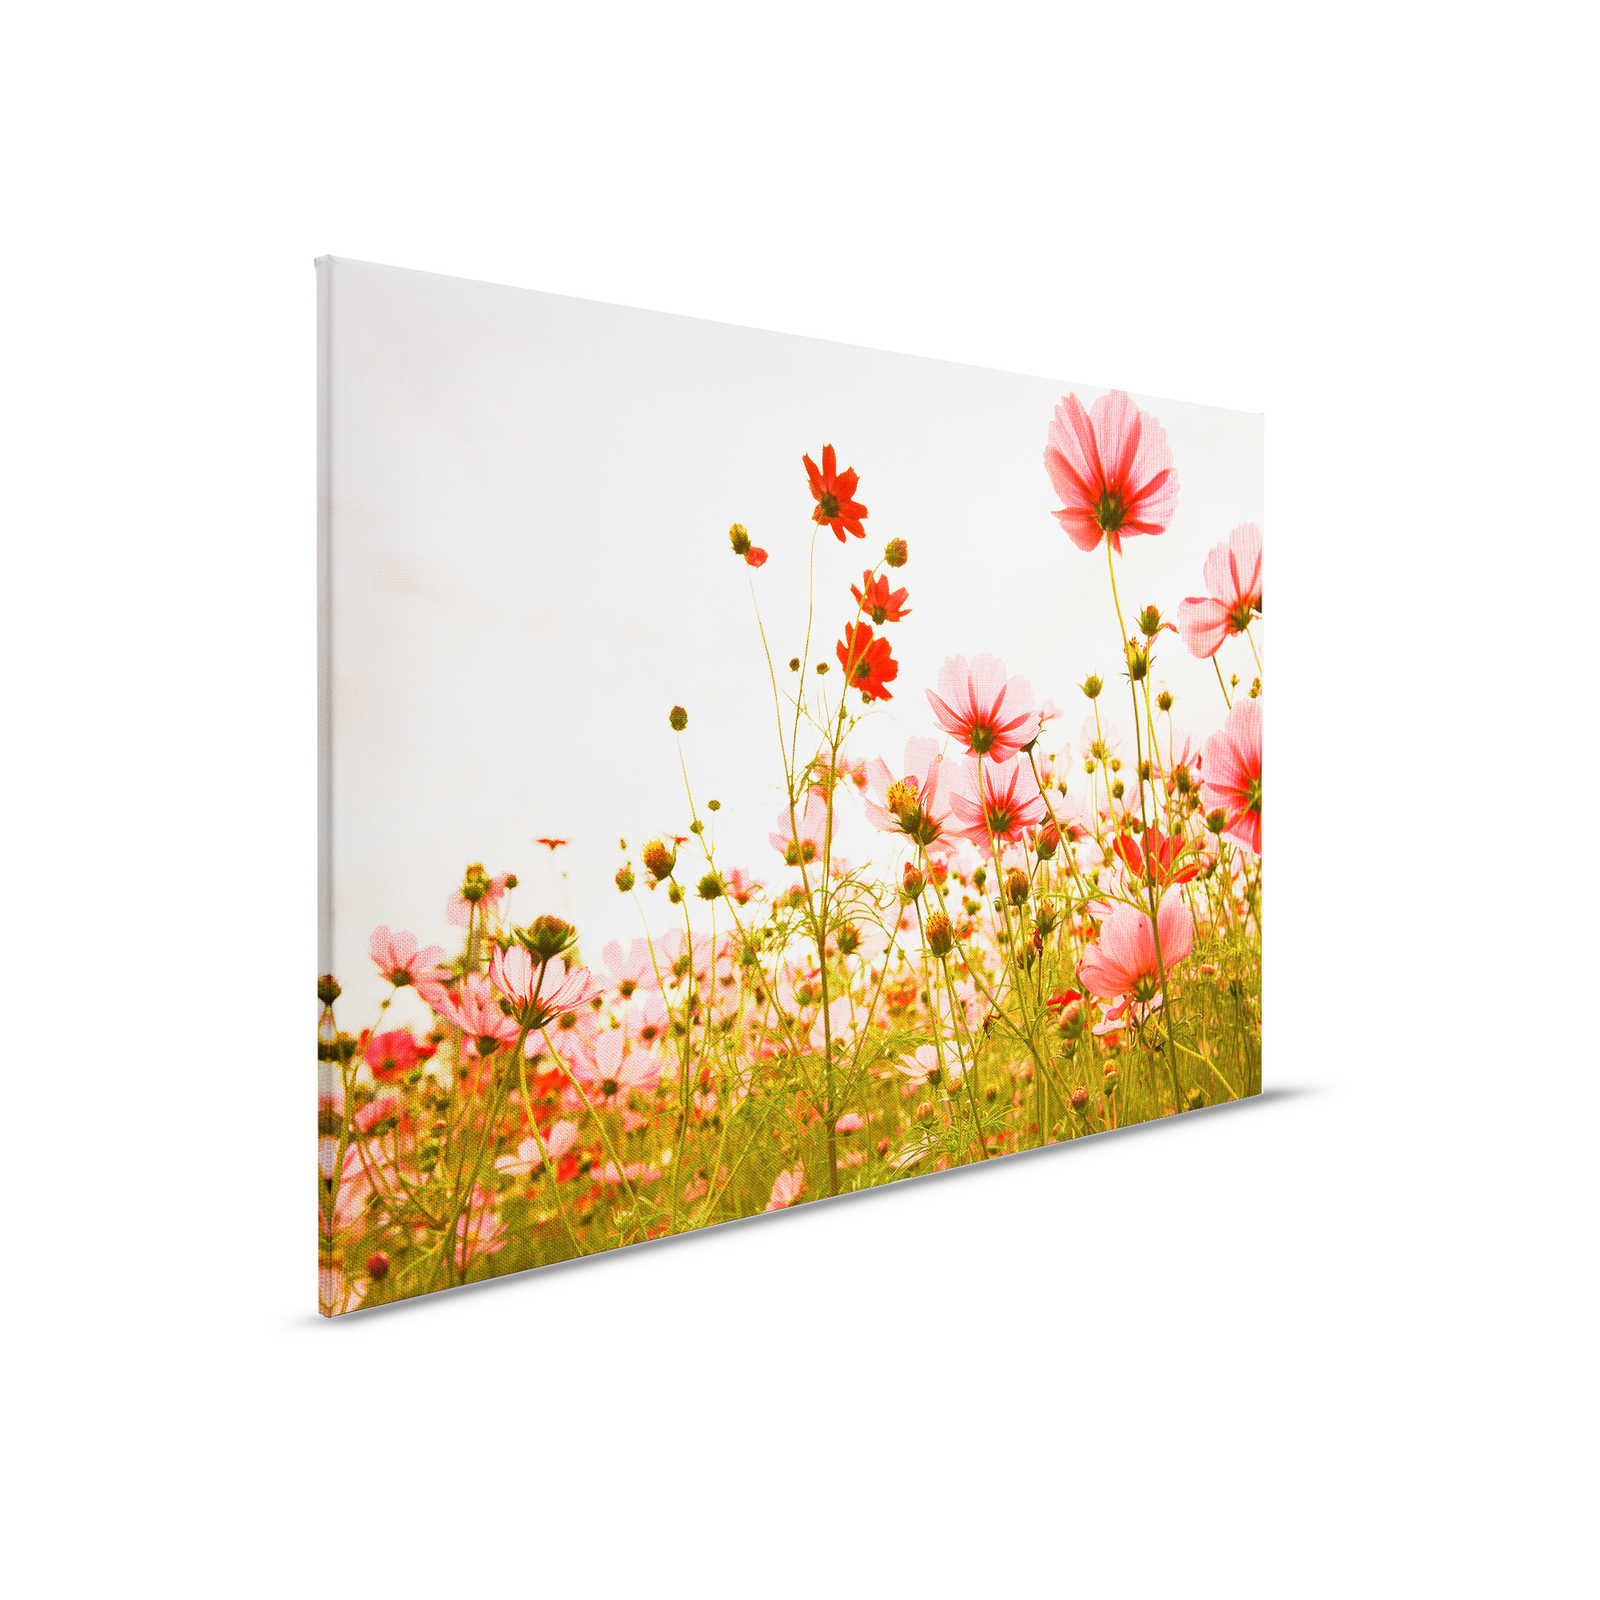         Leinwand mit Blumenwiese im Frühling | rosa, grün, weiß – 0,90 m x 0,60 m
    